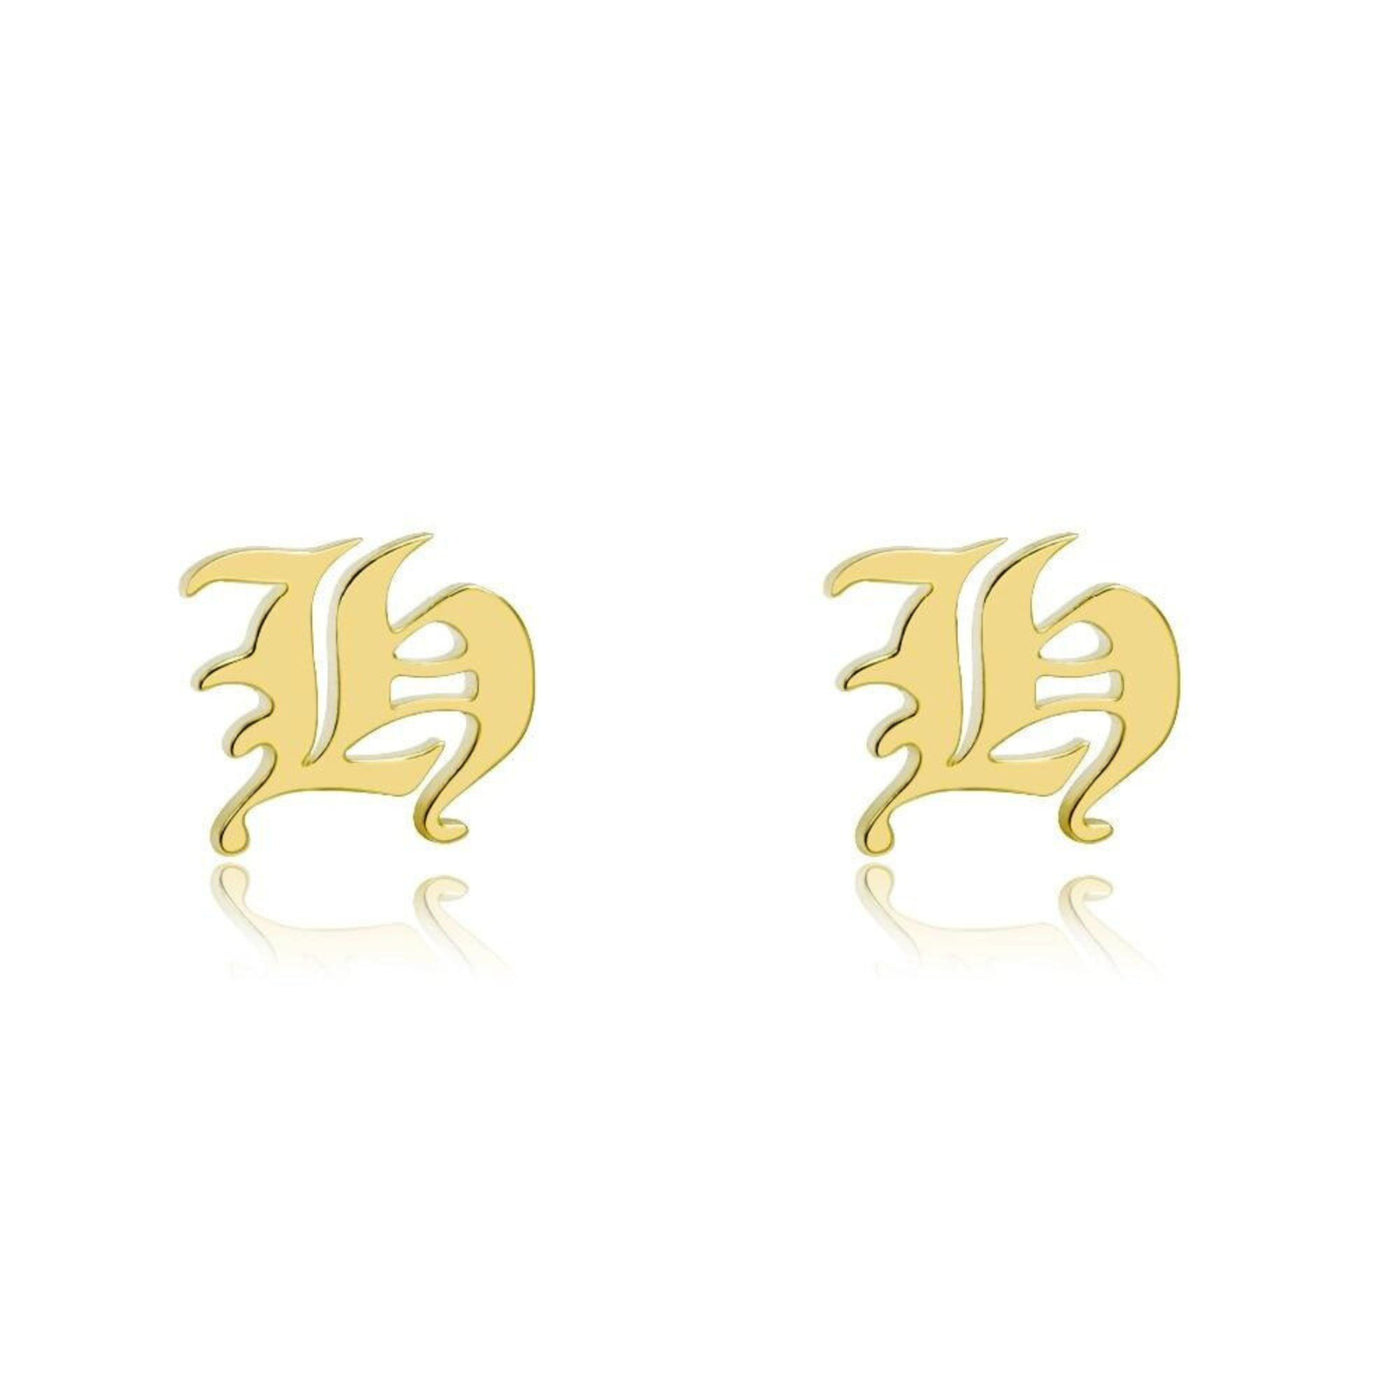 Supreme - Custom Letter Earrings - HouseofLx-18K Yellow Gold